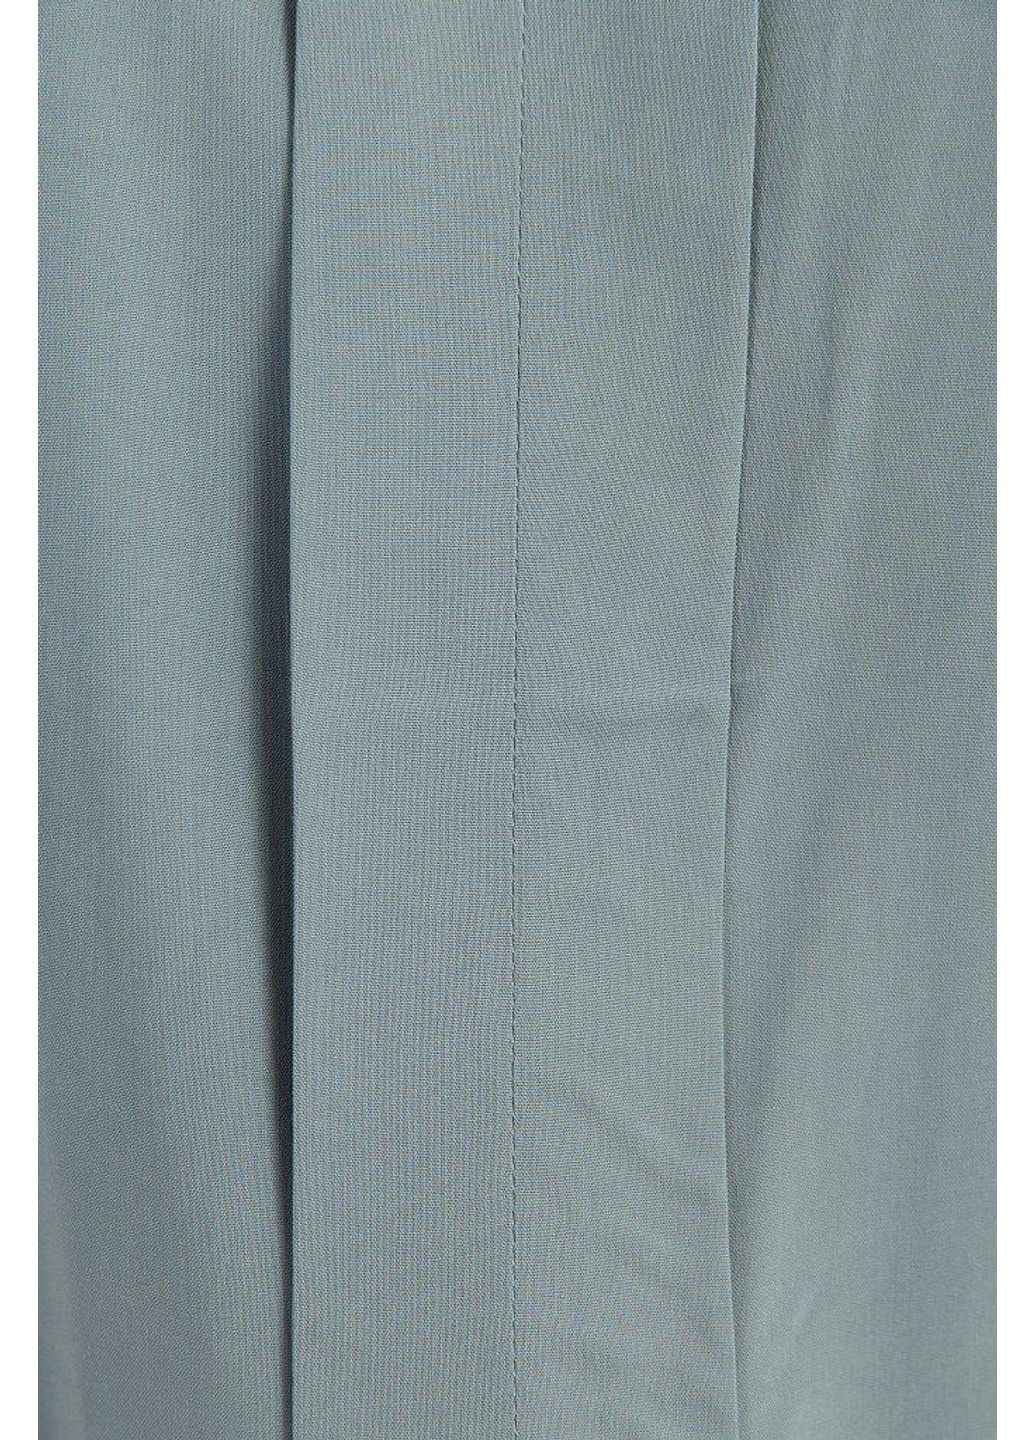 Серая летняя блузка s19-11099-516 Finn Flare